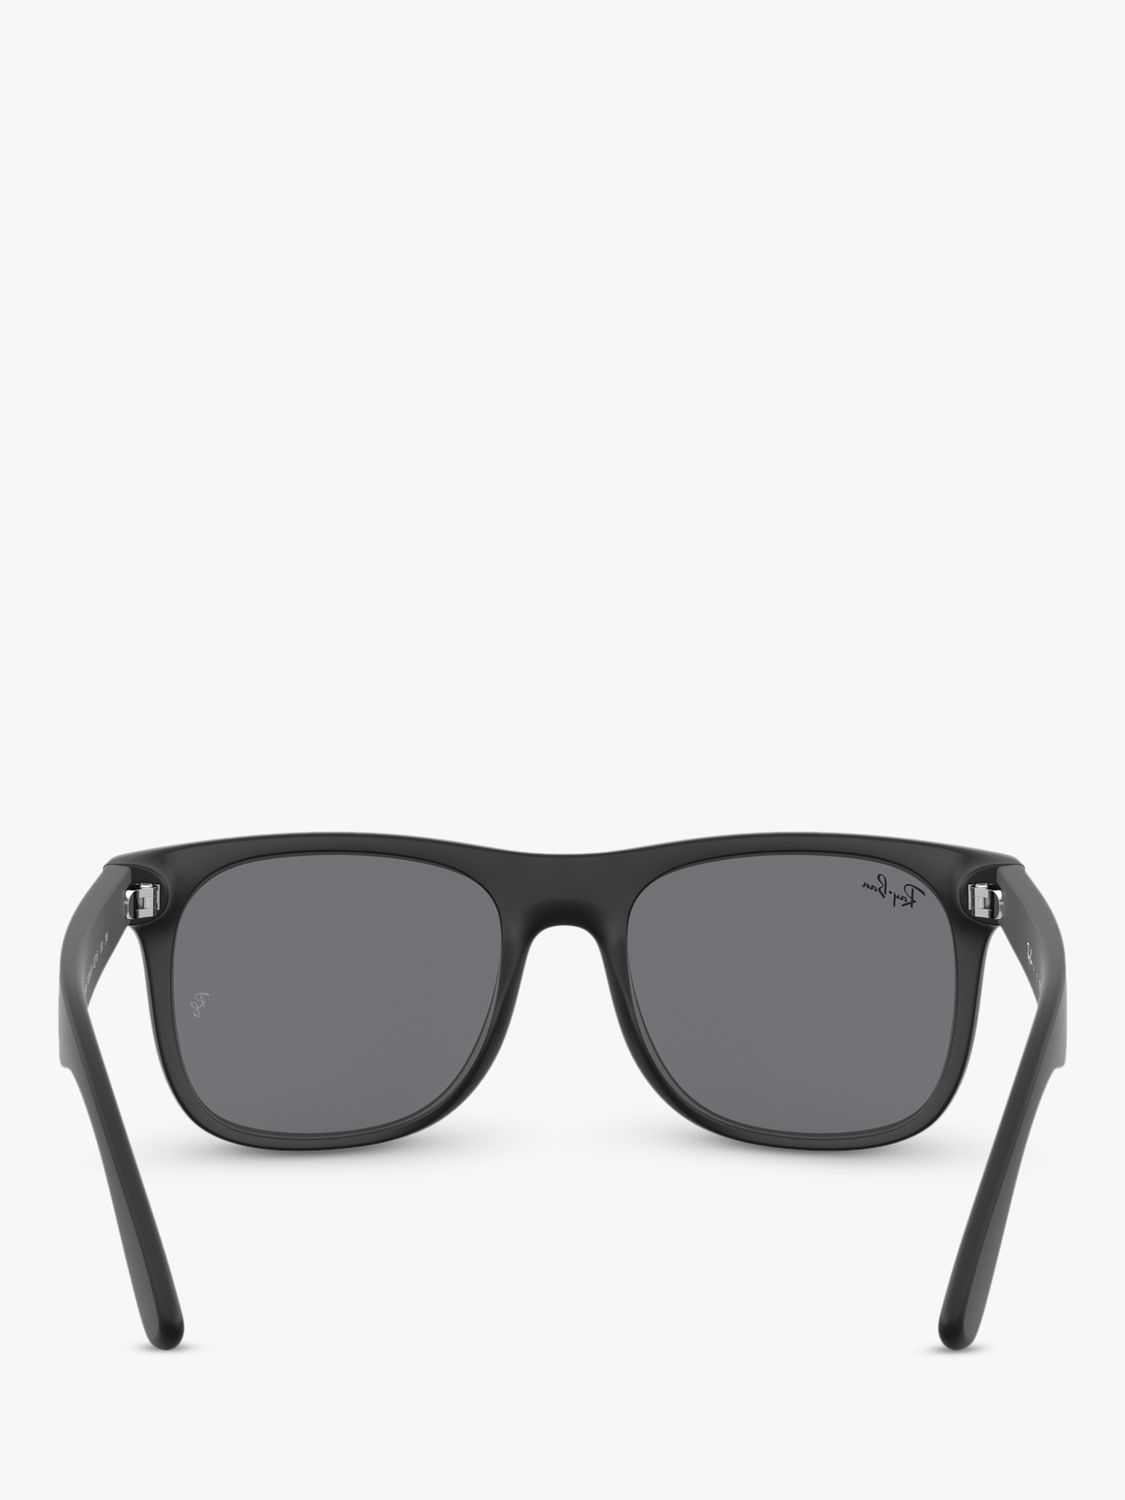 Ray-Ban Junior RJ9069S Square Frame Sunglasses, Black/Blue